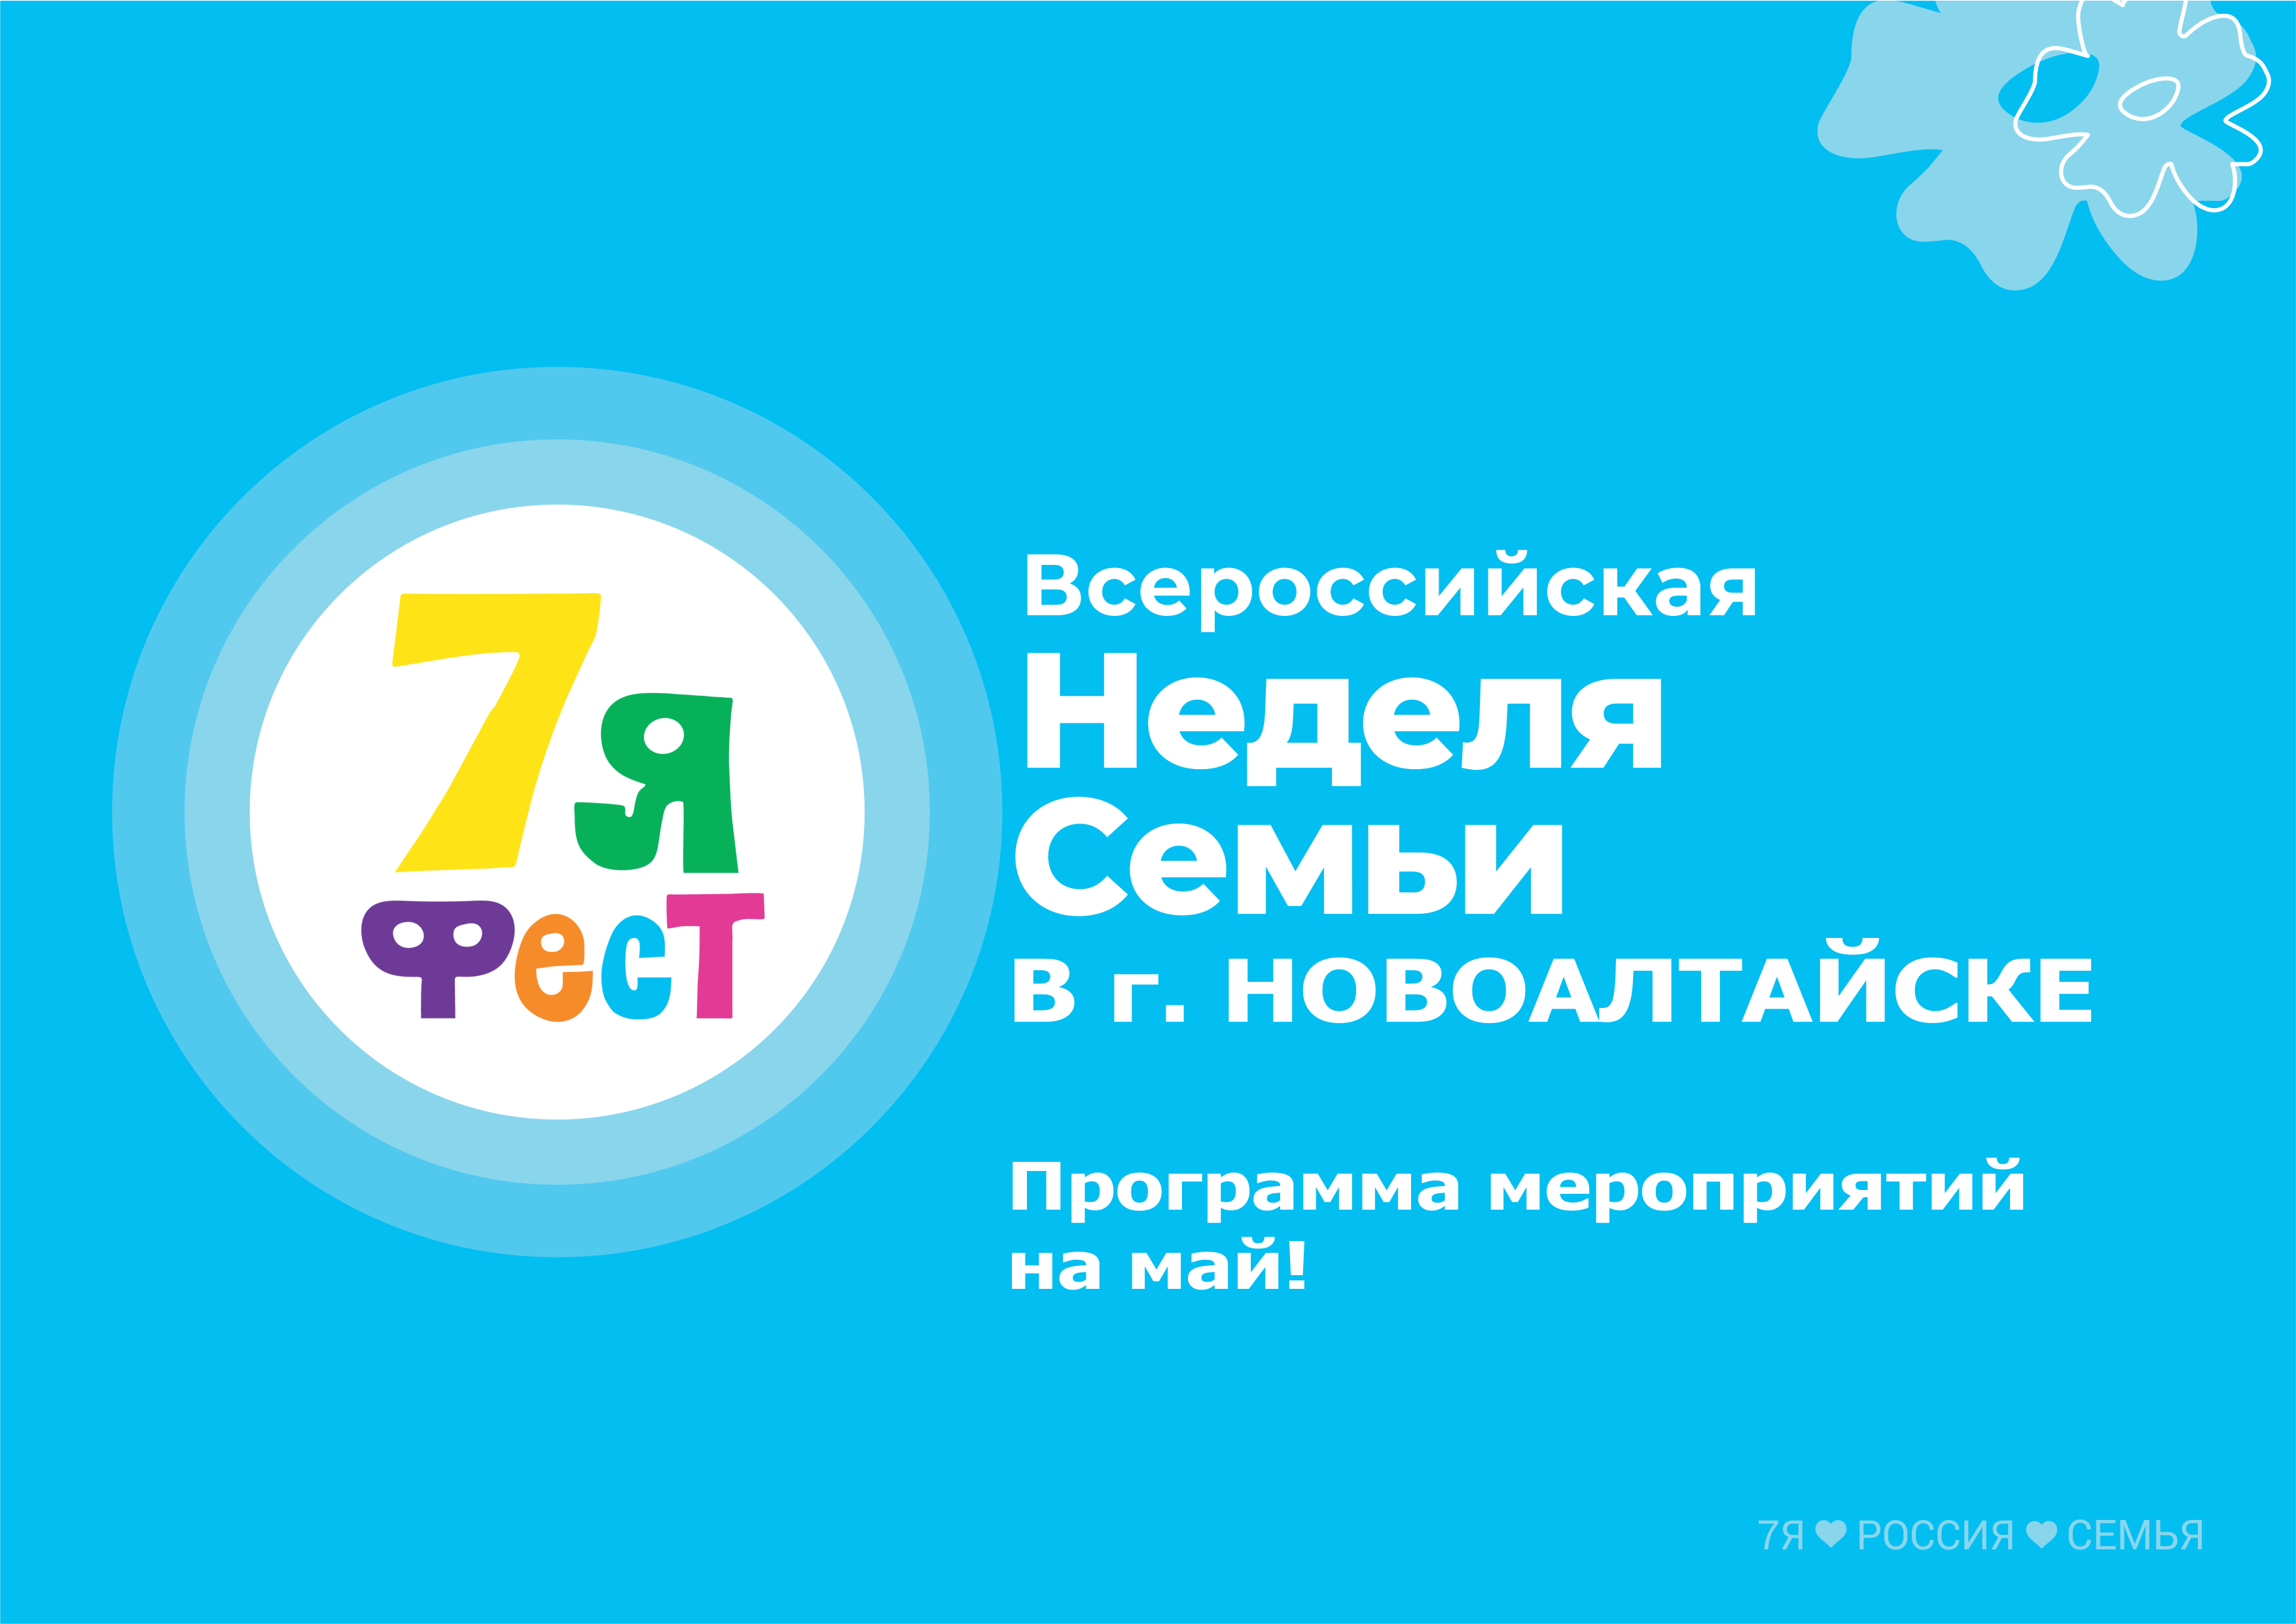 Программа мероприятий  Всероссийской недели семьи  7Яфест  в городе Новоалтайске.